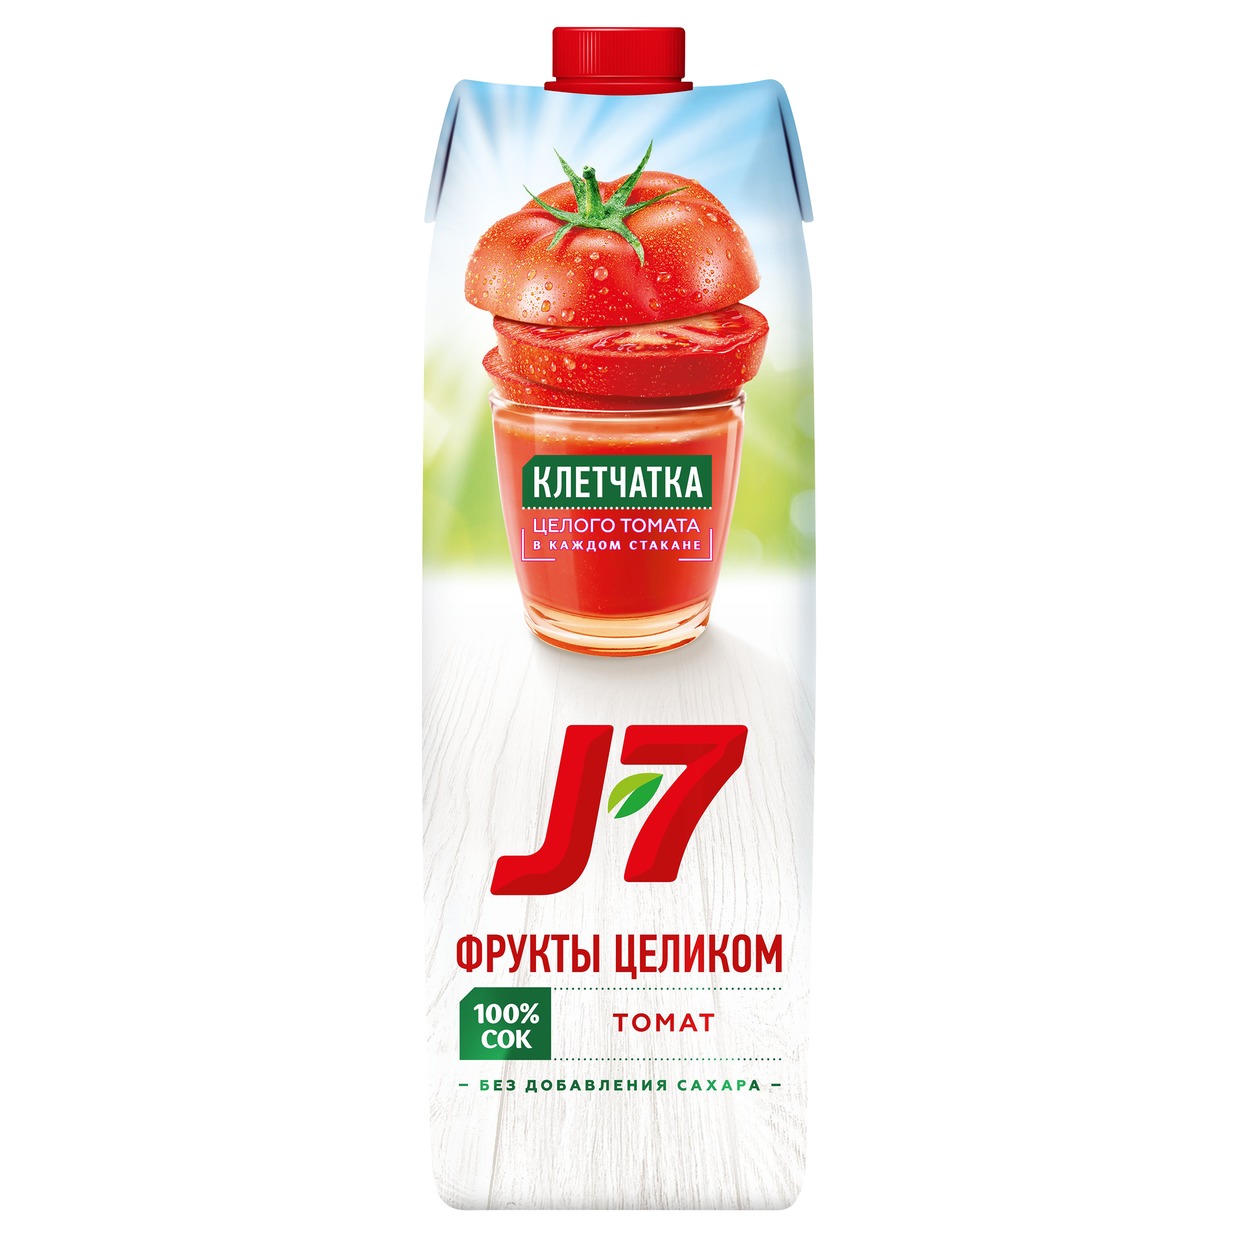 J-7 Сок томатный с солью д/дет.пит.0,97л по акции в Пятерочке